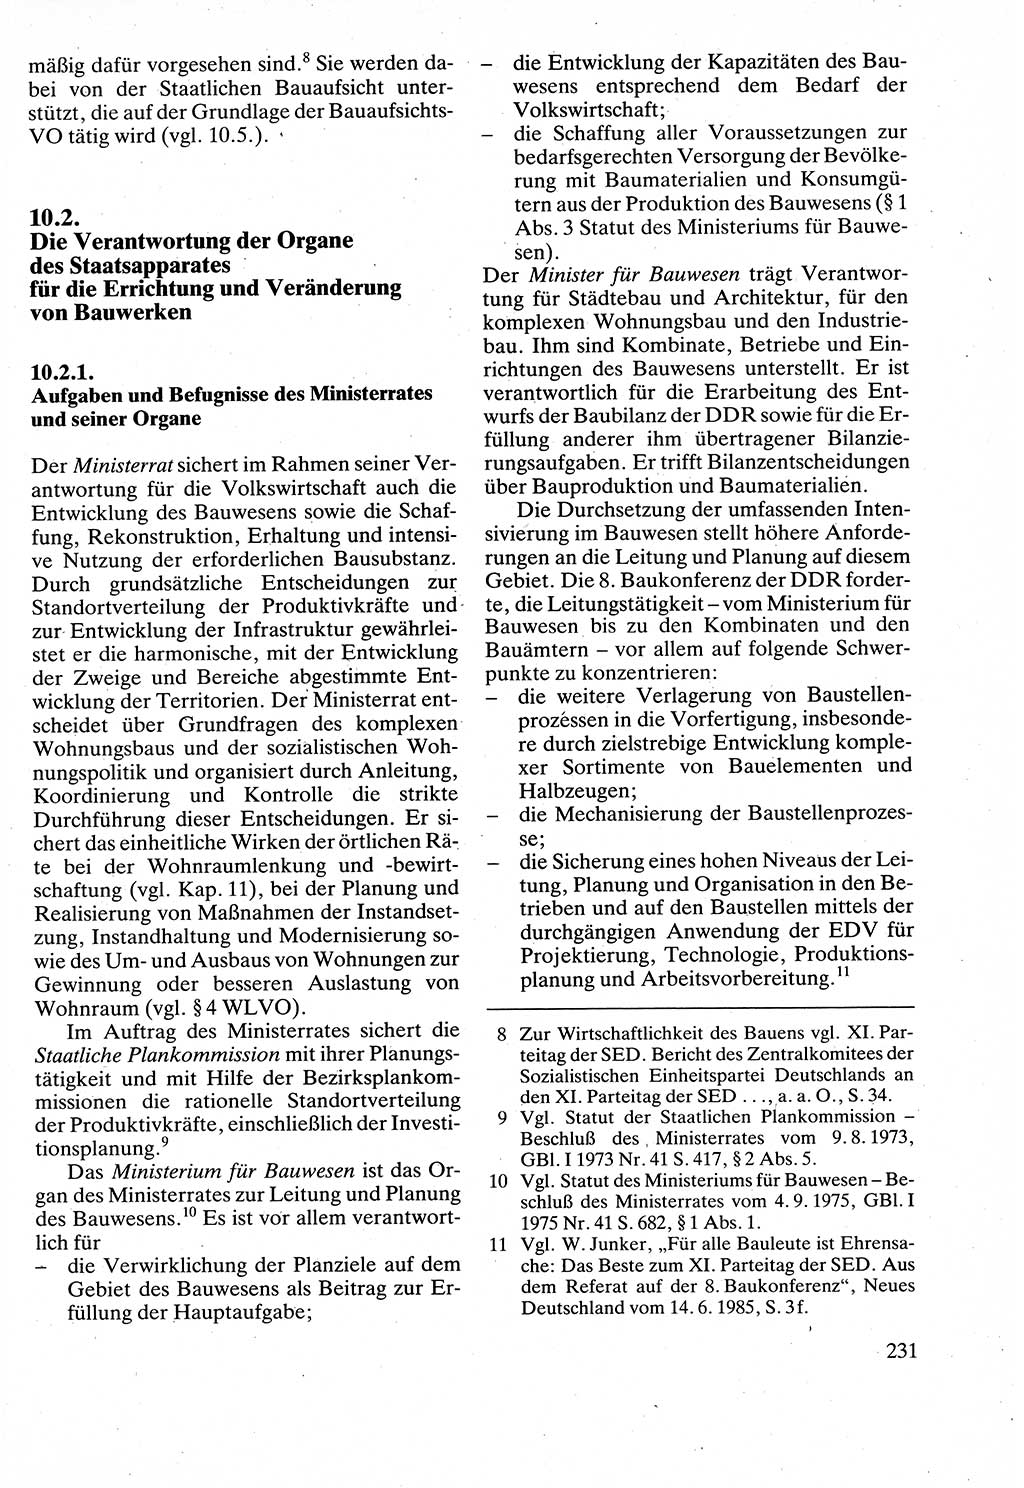 Verwaltungsrecht [Deutsche Demokratische Republik (DDR)], Lehrbuch 1988, Seite 231 (Verw.-R. DDR Lb. 1988, S. 231)